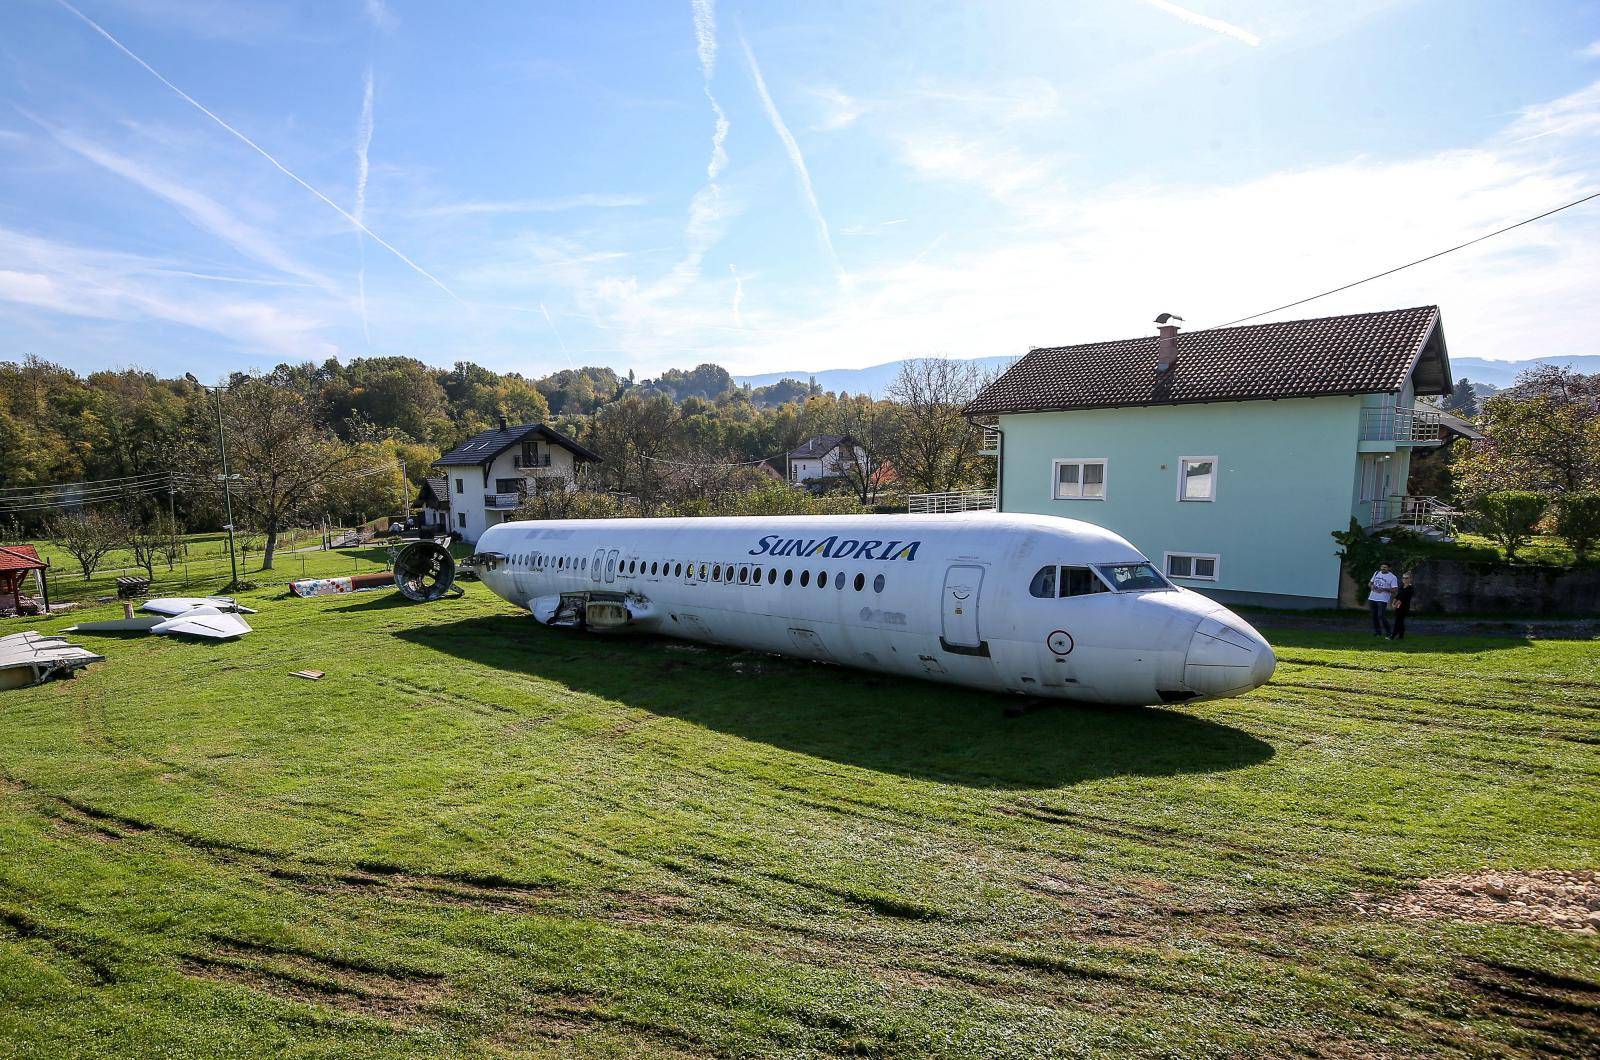 Parkirao avion u dvorištu: U njemu će priređivati zabave